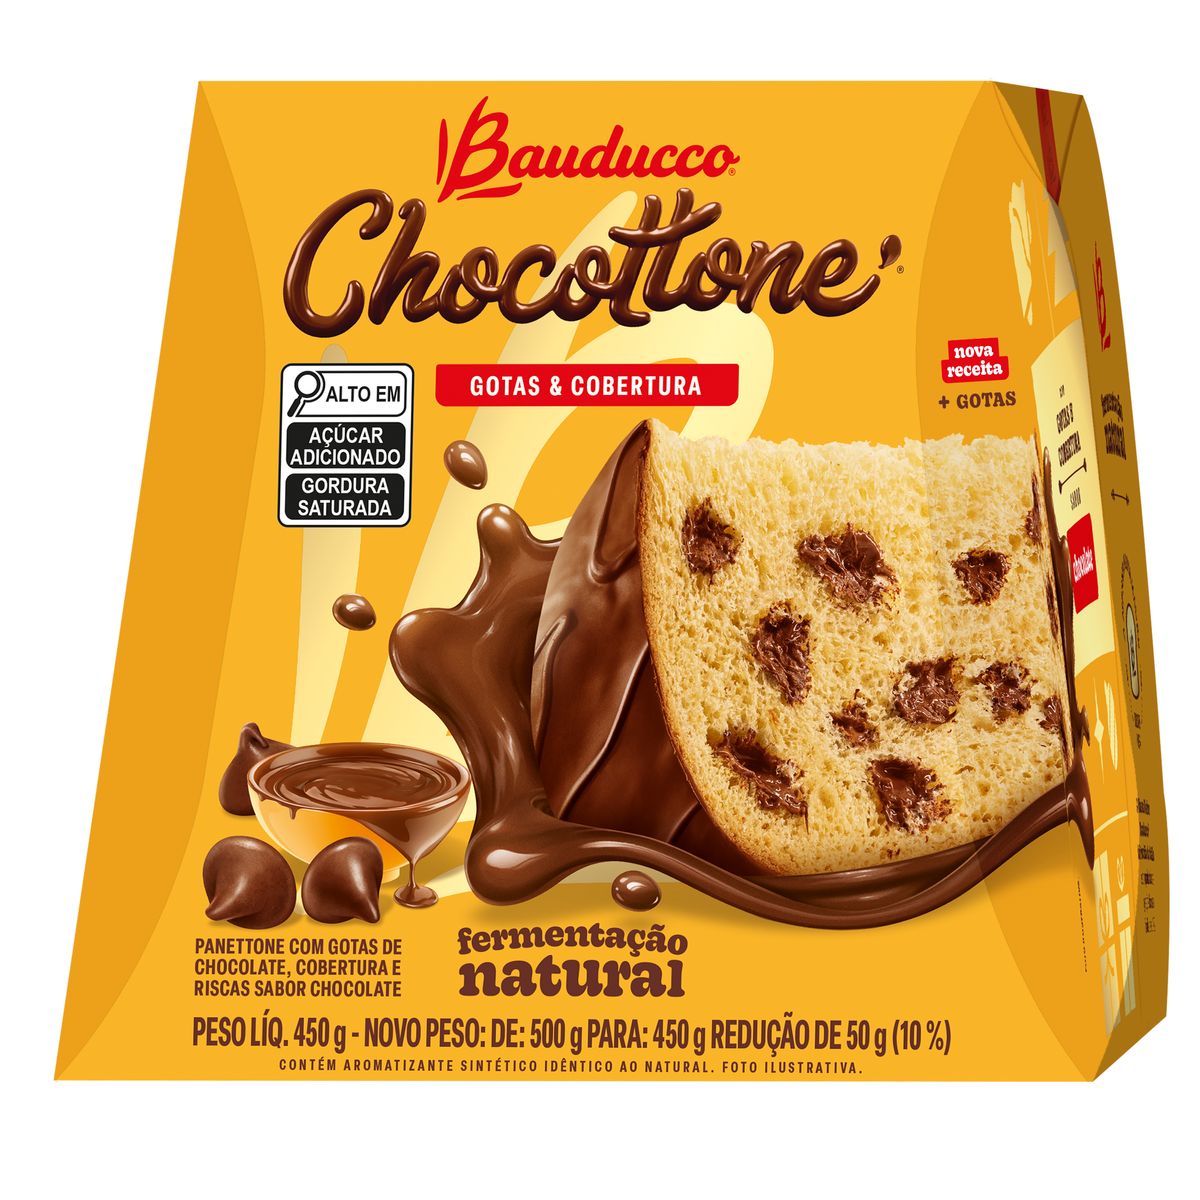 Chocottone Bauducco Gotas e Cobertura de Chocolate 450g image number 0